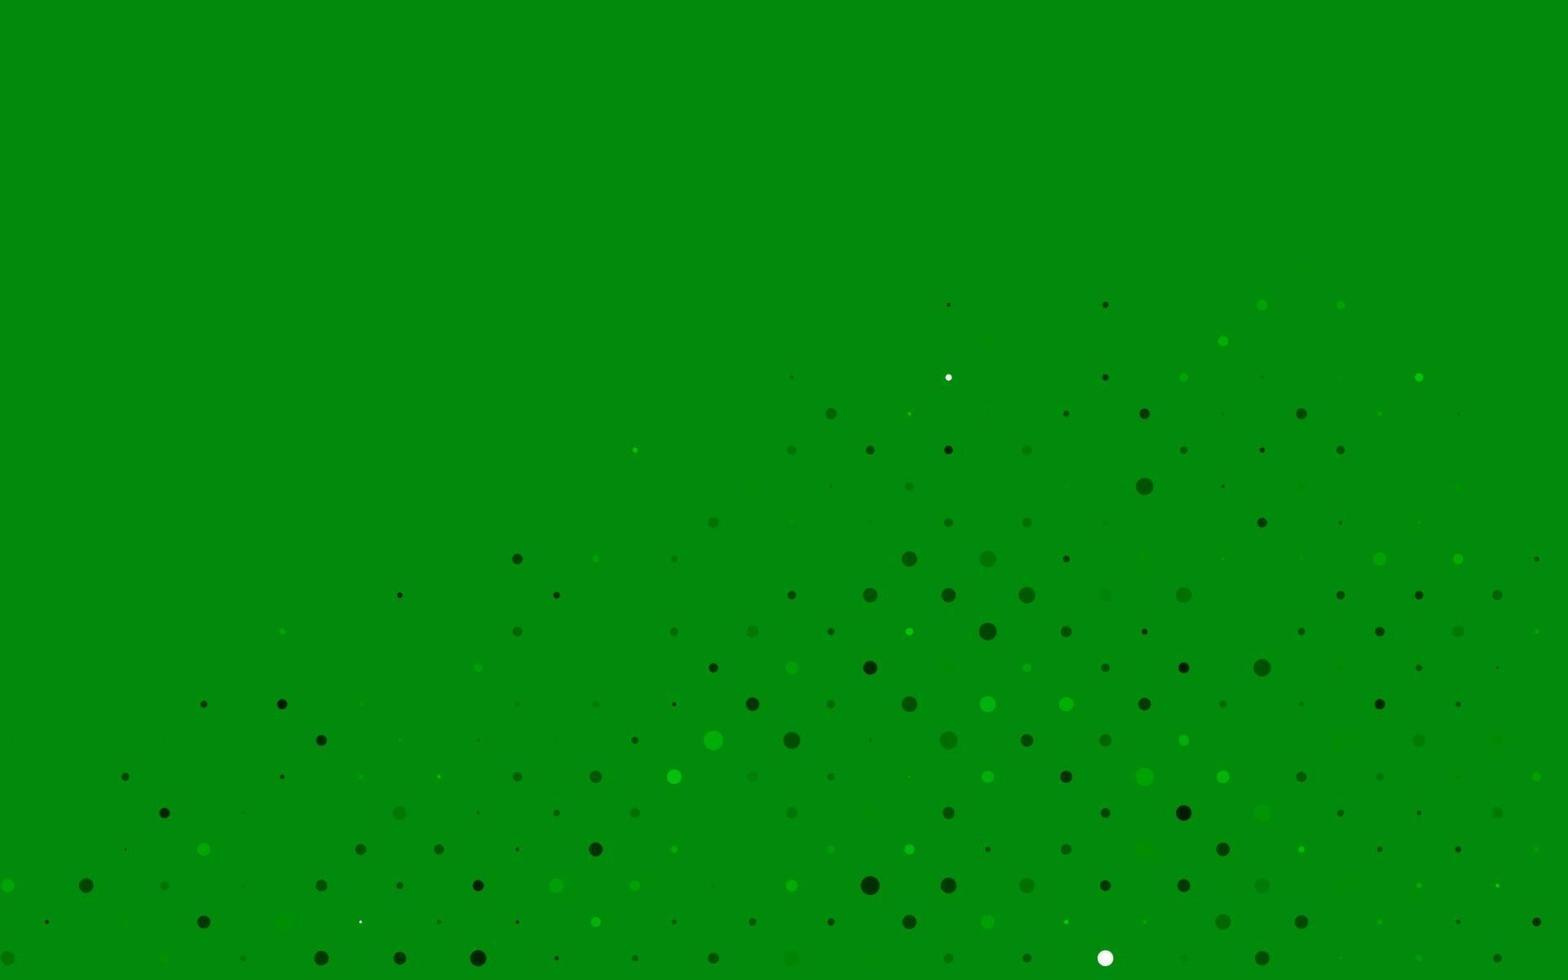 ljusblå, grön vektorbakgrund med prickar. vektor